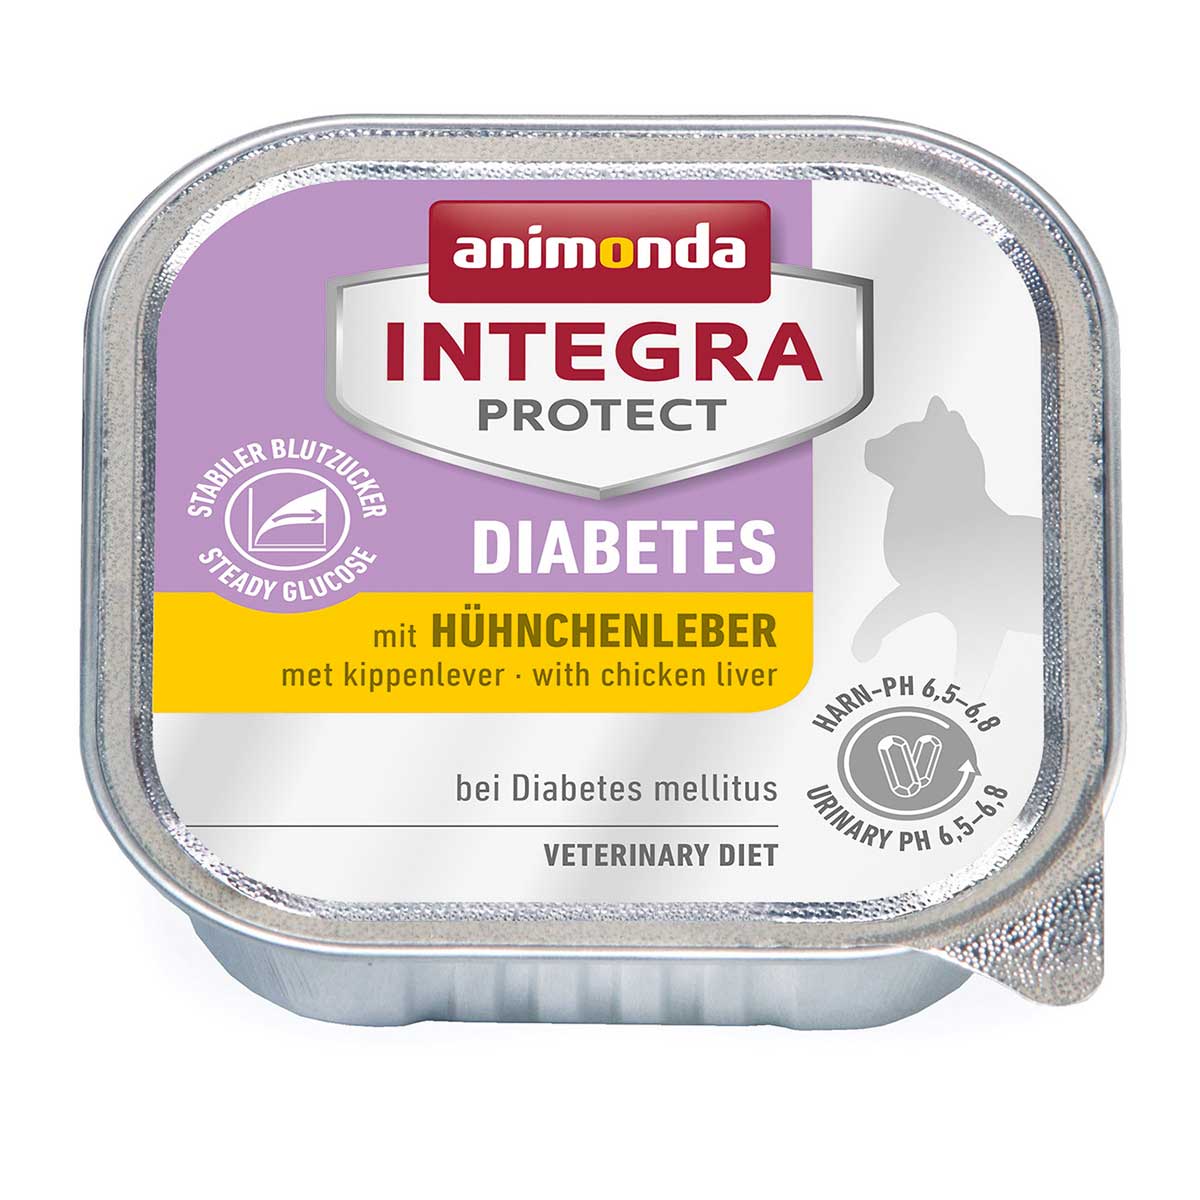 animonda Integra Protect Diabetes mit Hühnchenleber 16x100g